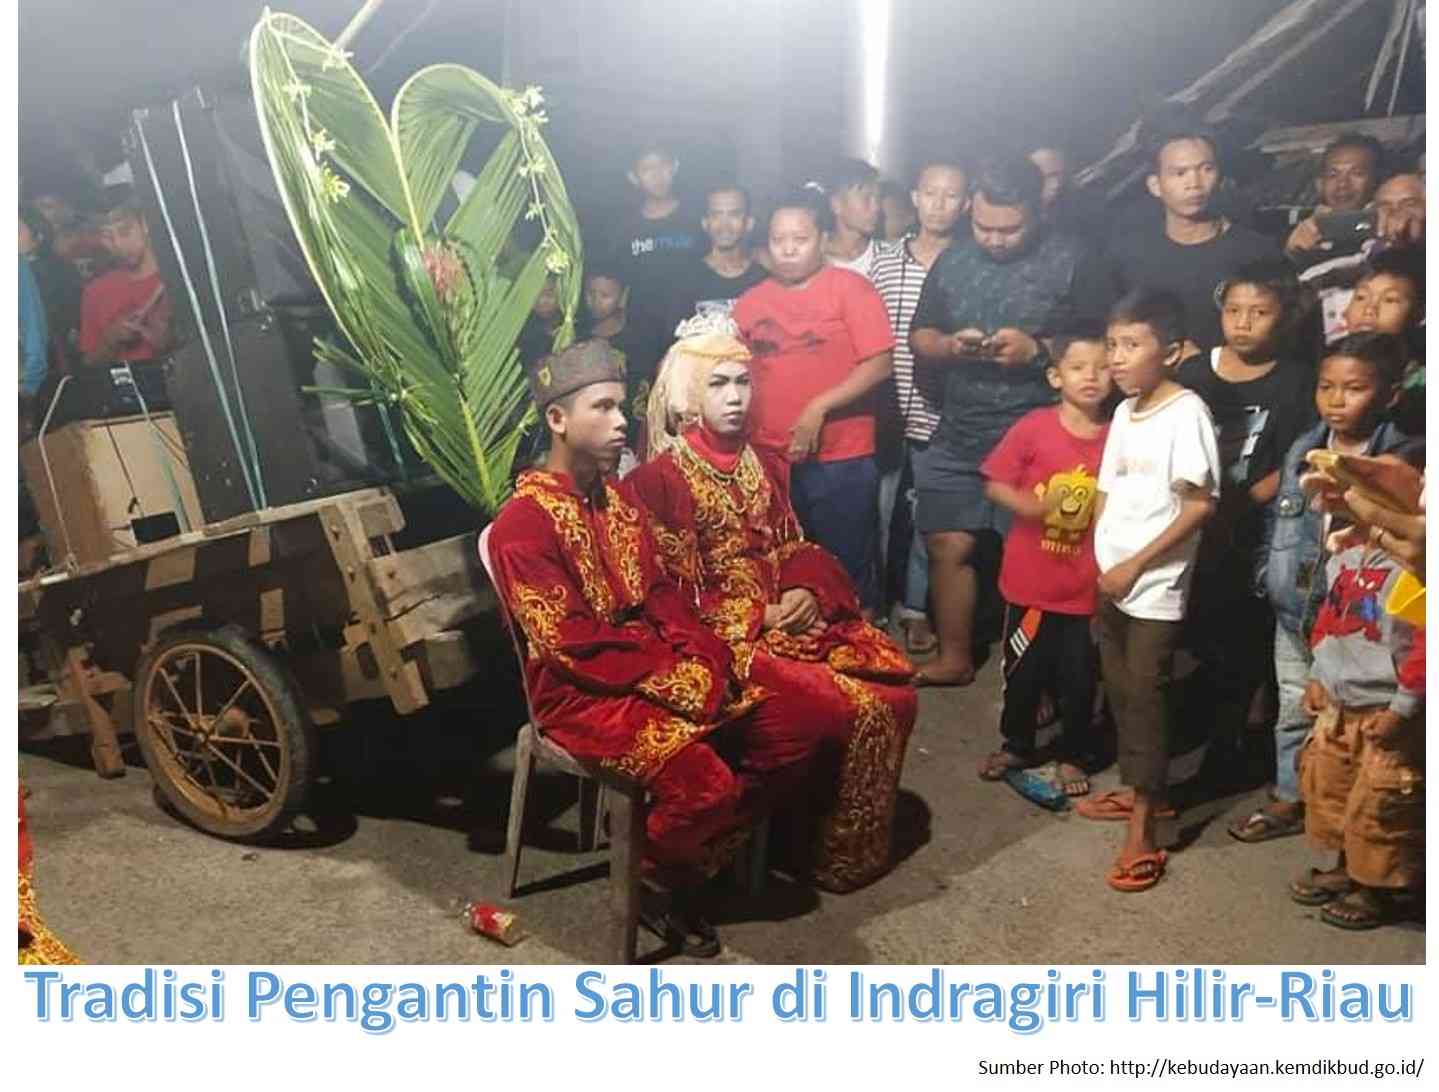 Tradisi Pengantin Sahur yang Unik di Indragiri Hilir-Riau